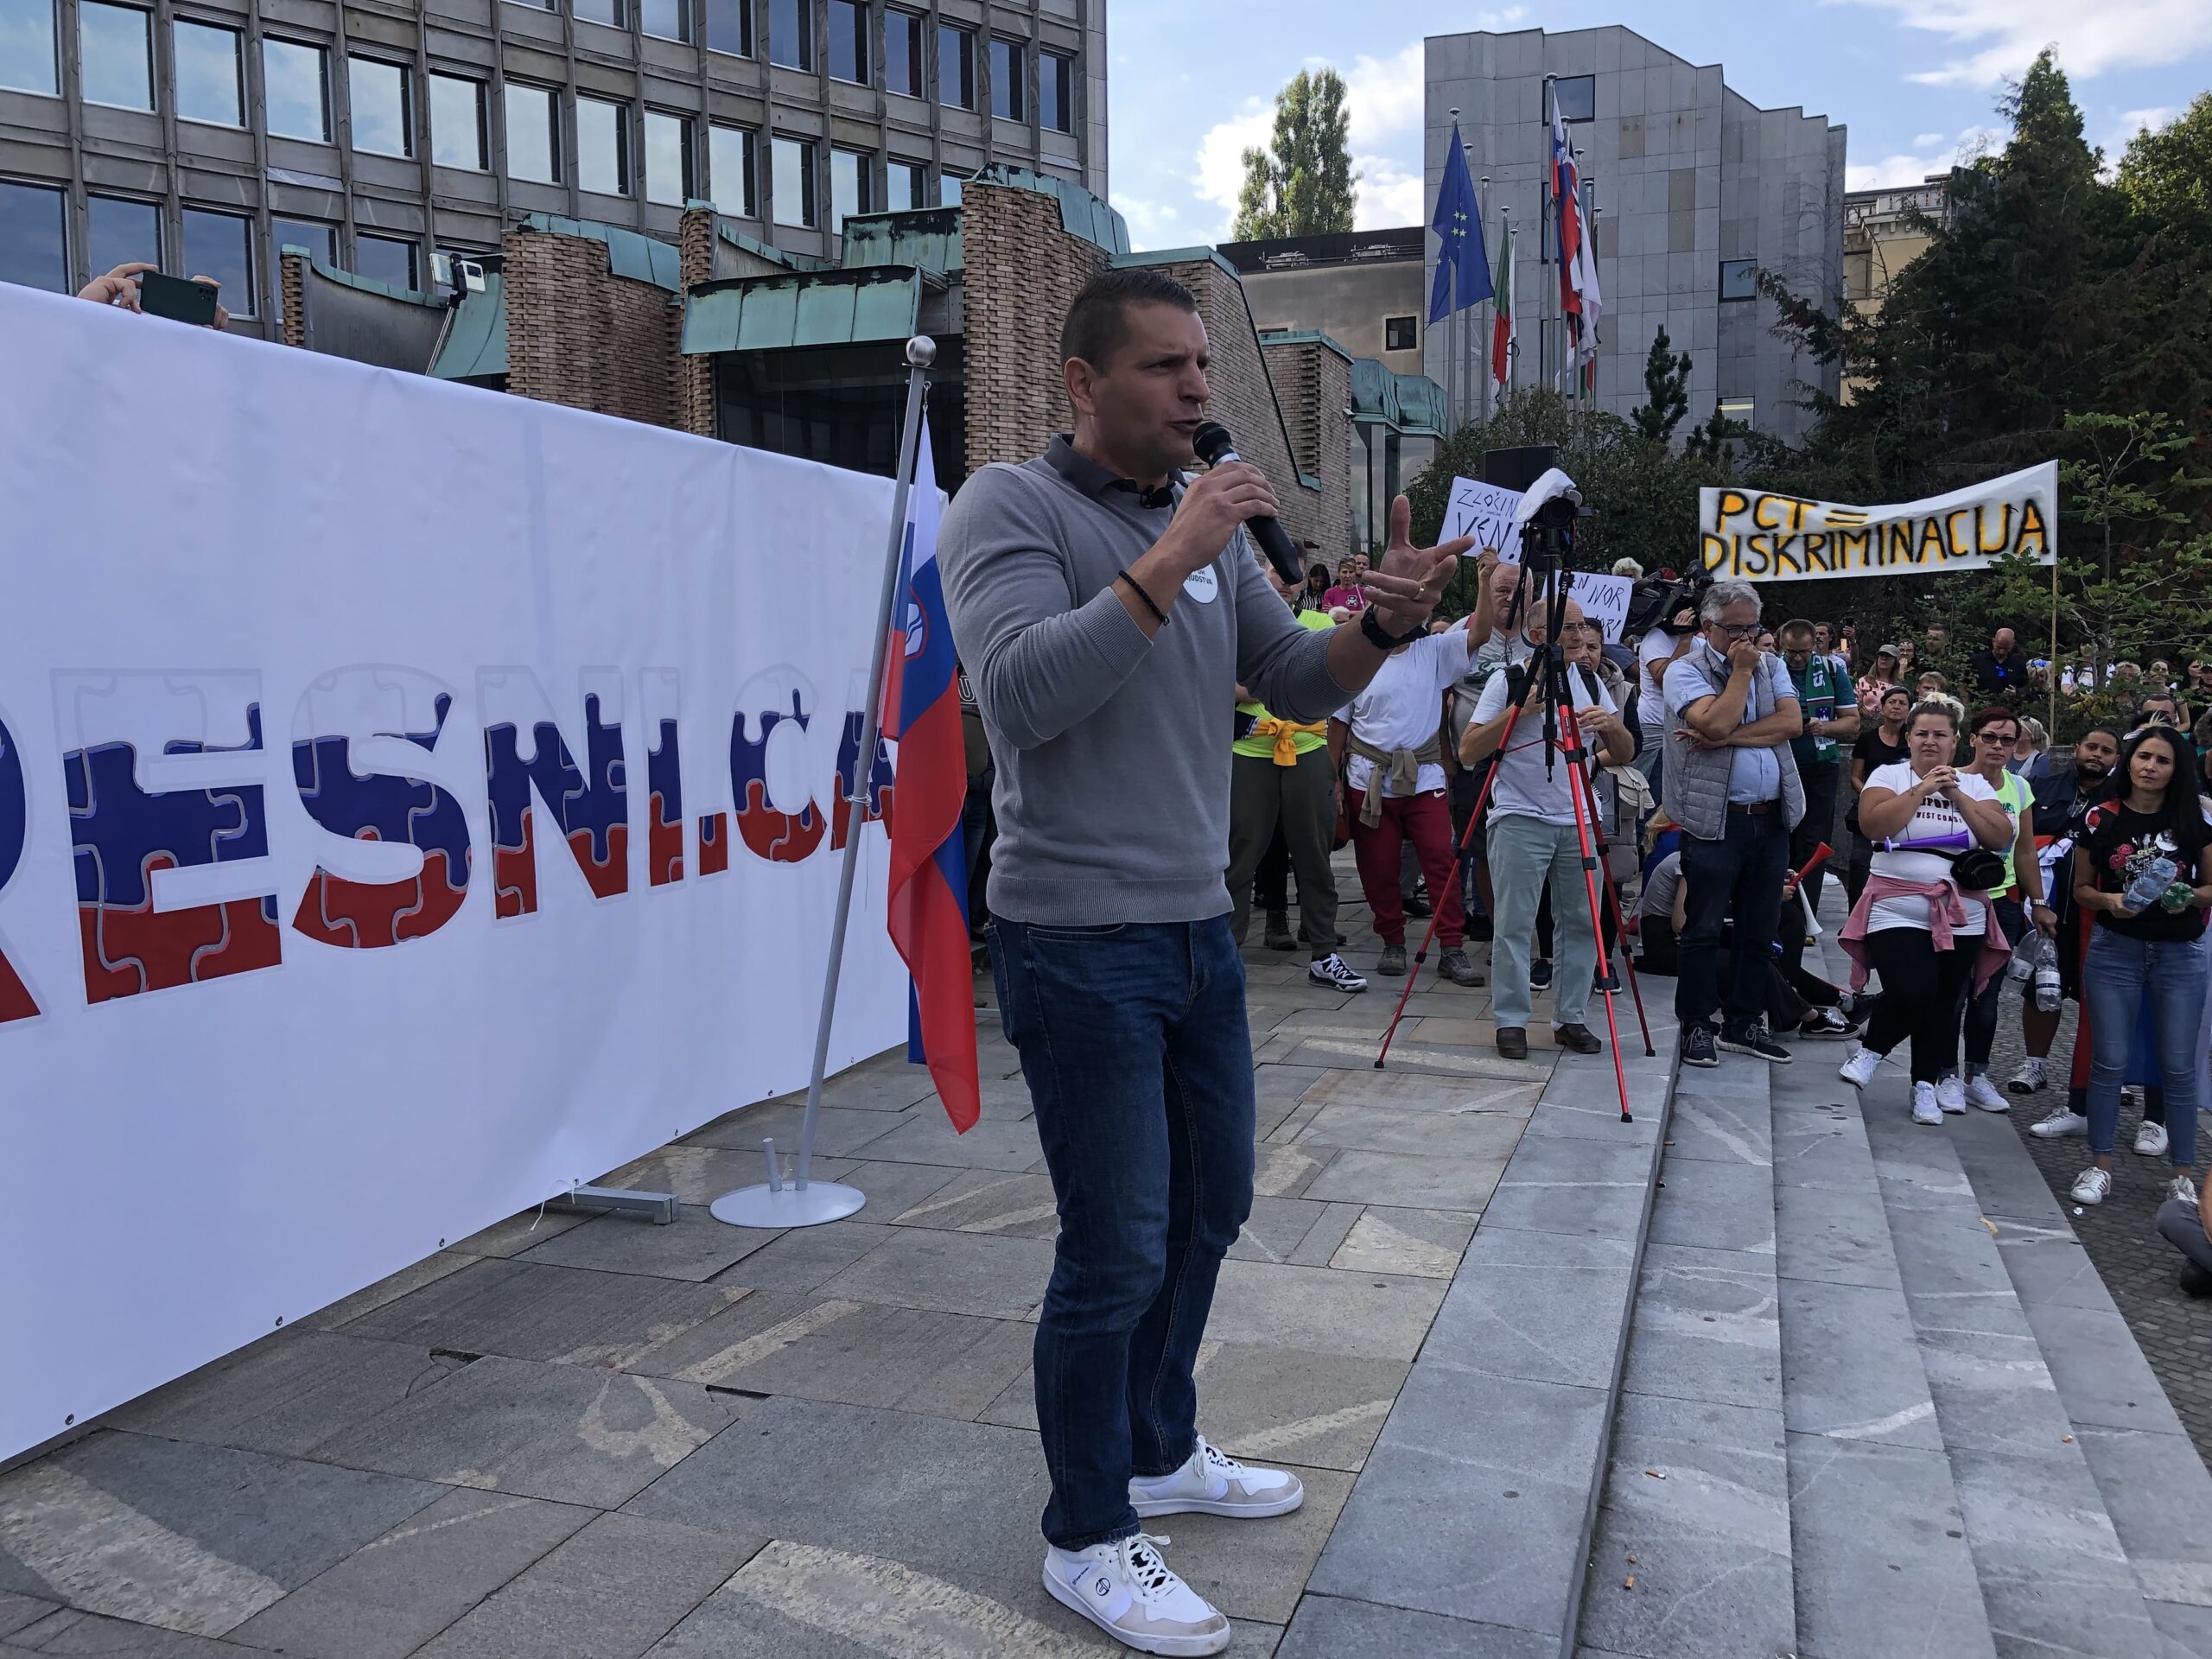 (VIDEO) Zoran Stevanović hoče Janezu Janši pokvariti najpomembnejši dohodek predsedovanja, saj bo očitno uresničil grožnjo z protesti in ponovno blokado prometa pred sredinim vrhom-EU Zahodni Balkan na Brdo pri Kranju